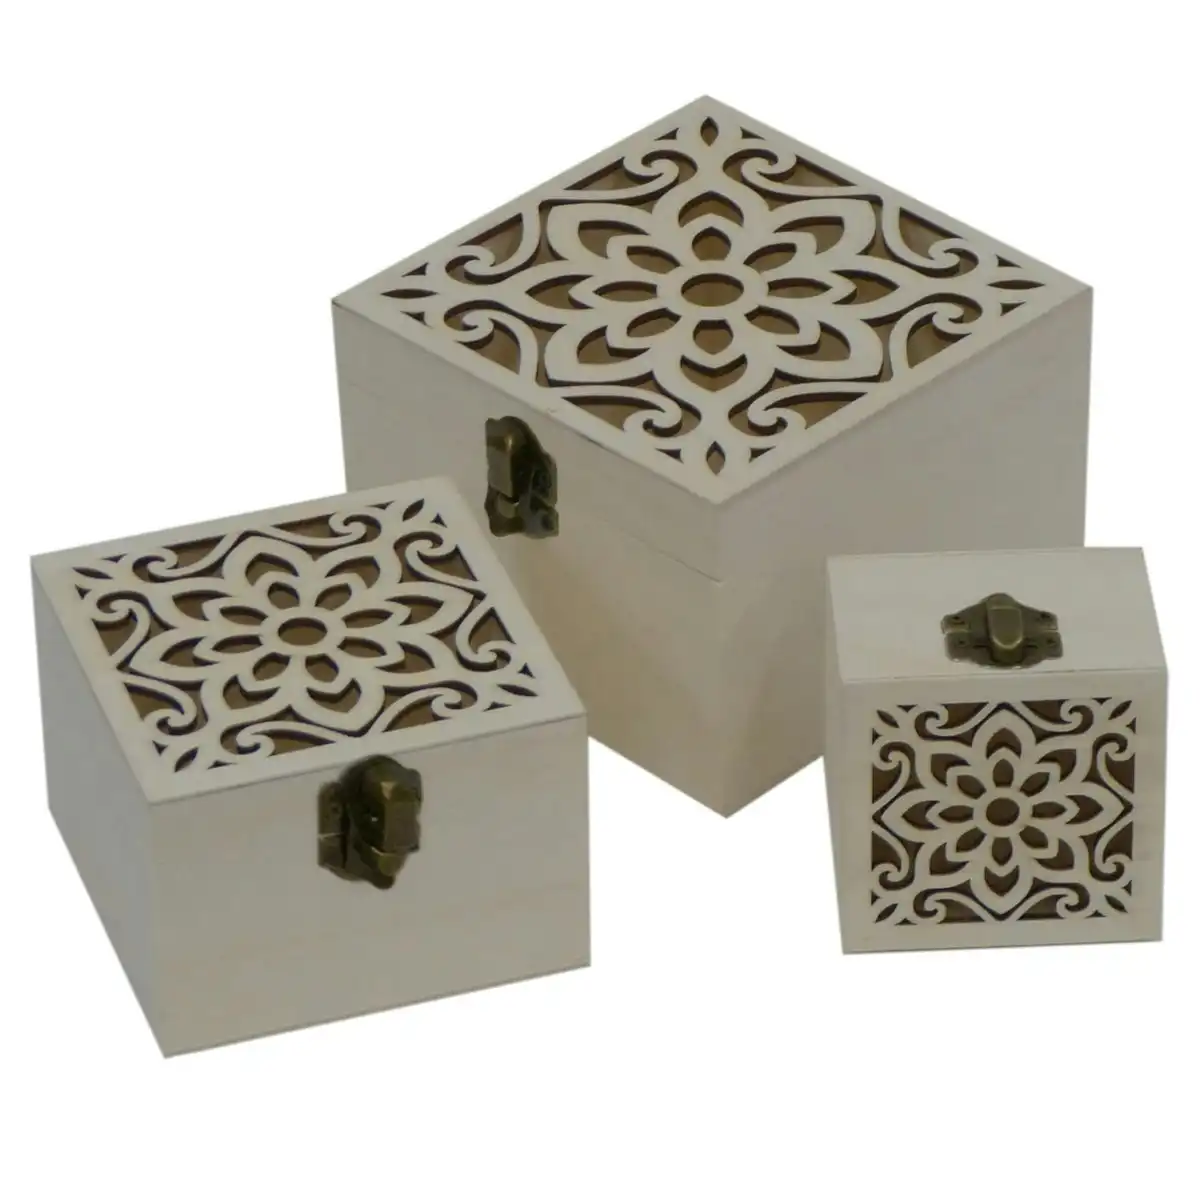 3pc Boyle Craft Square Wooden Storage Box Laser Cut Flower w/Catch Organiser Set